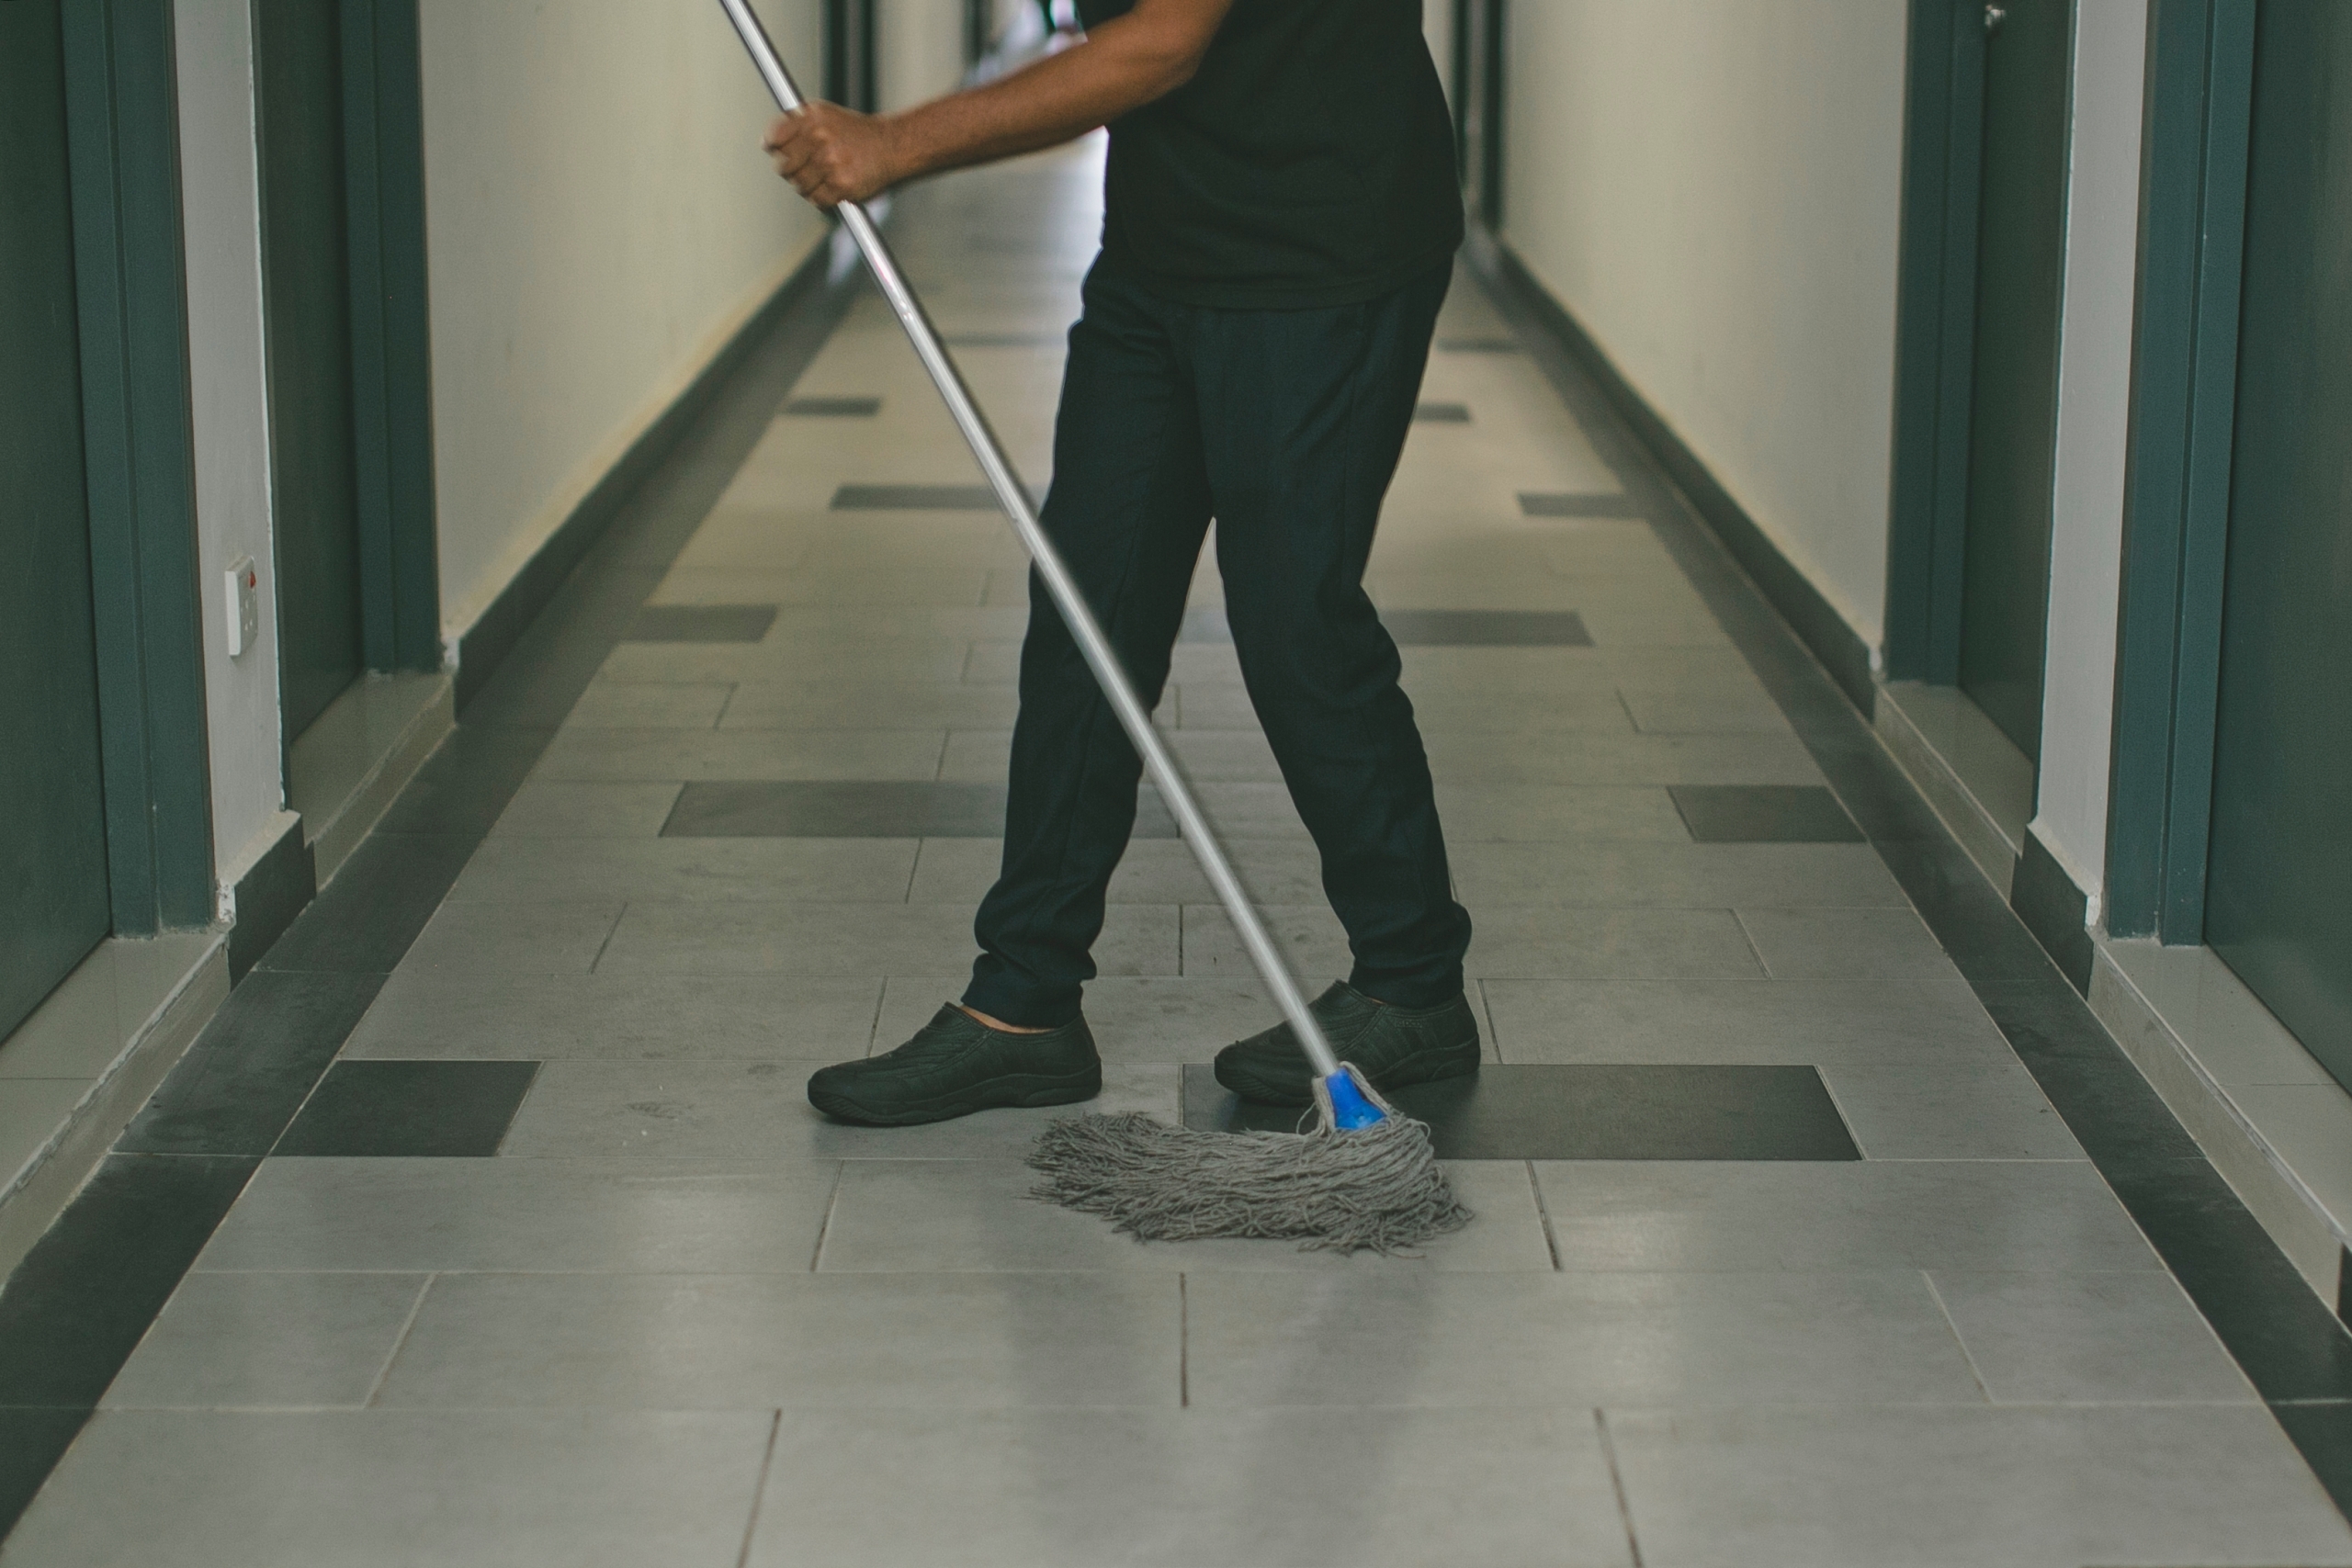 dirty floors endanger employees